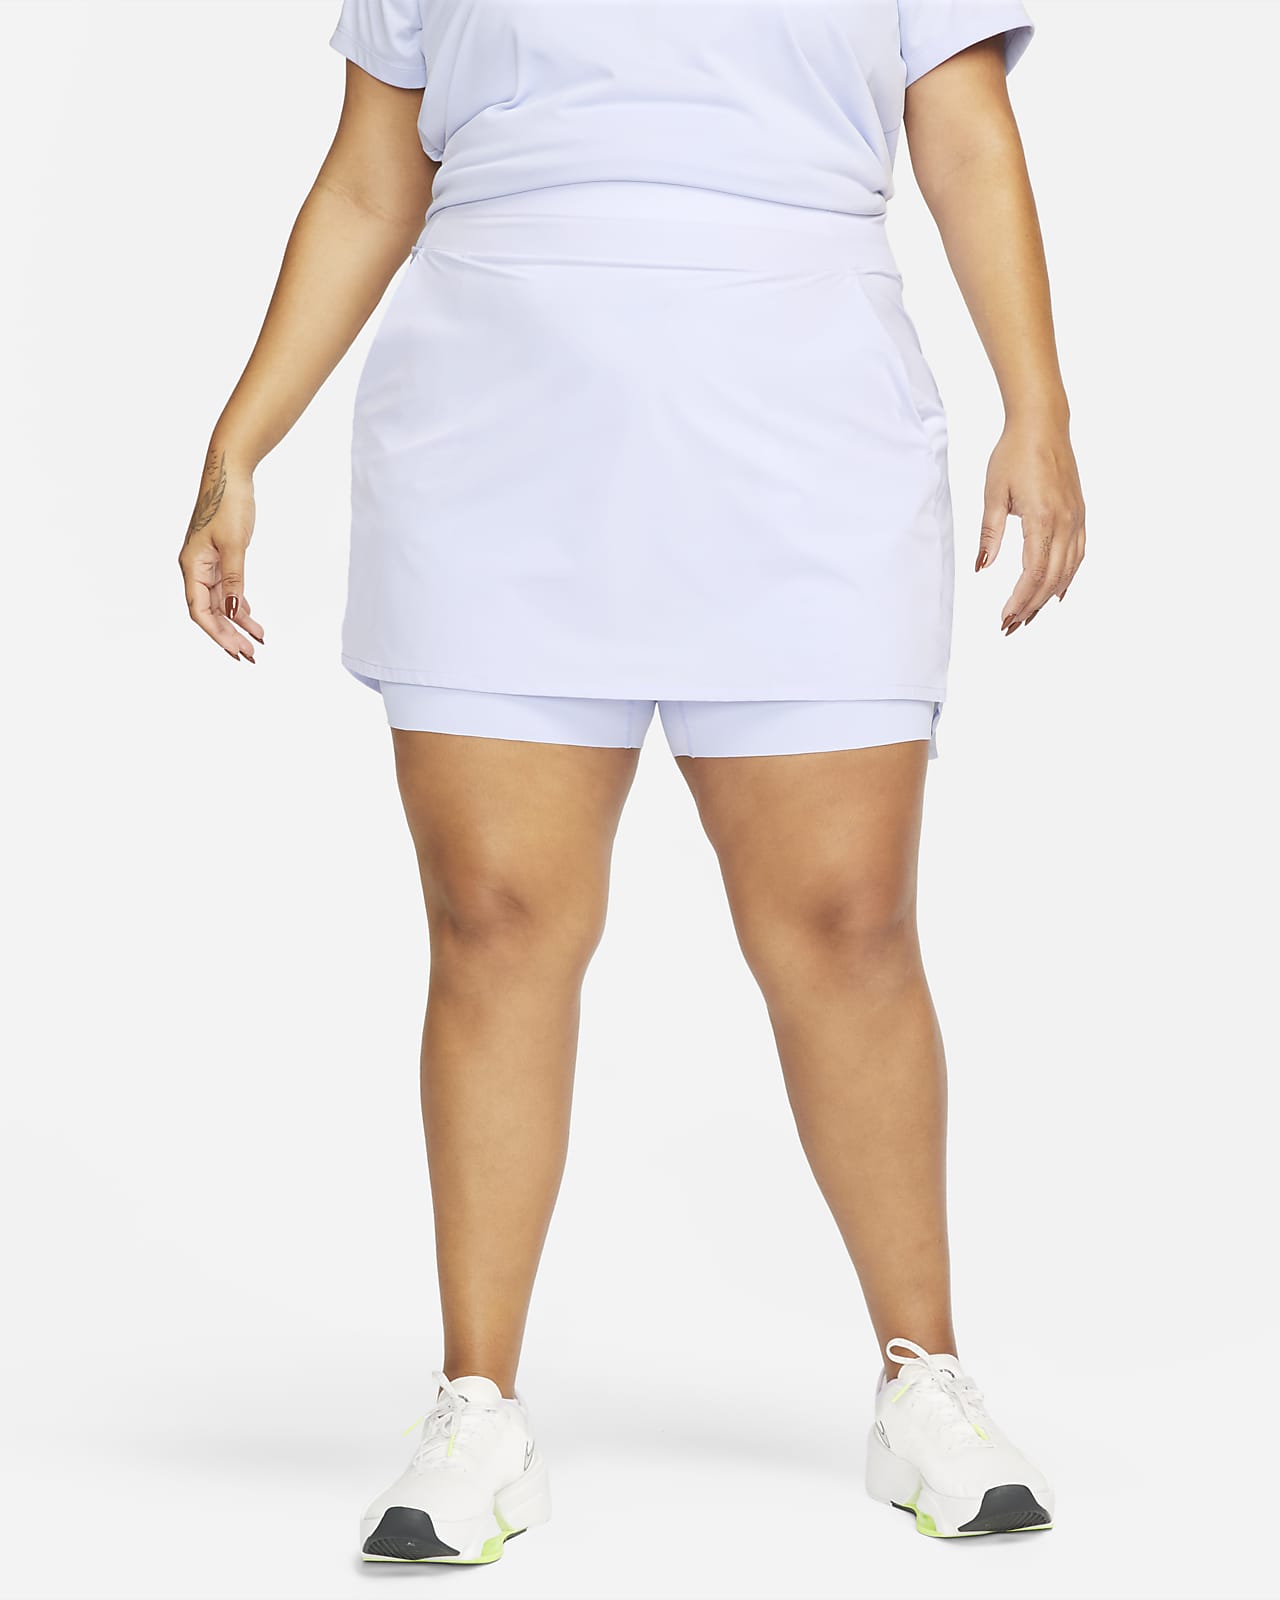 Falda pantalón entrenamiento de medio para mujer (talla grande) Nike Nike.com